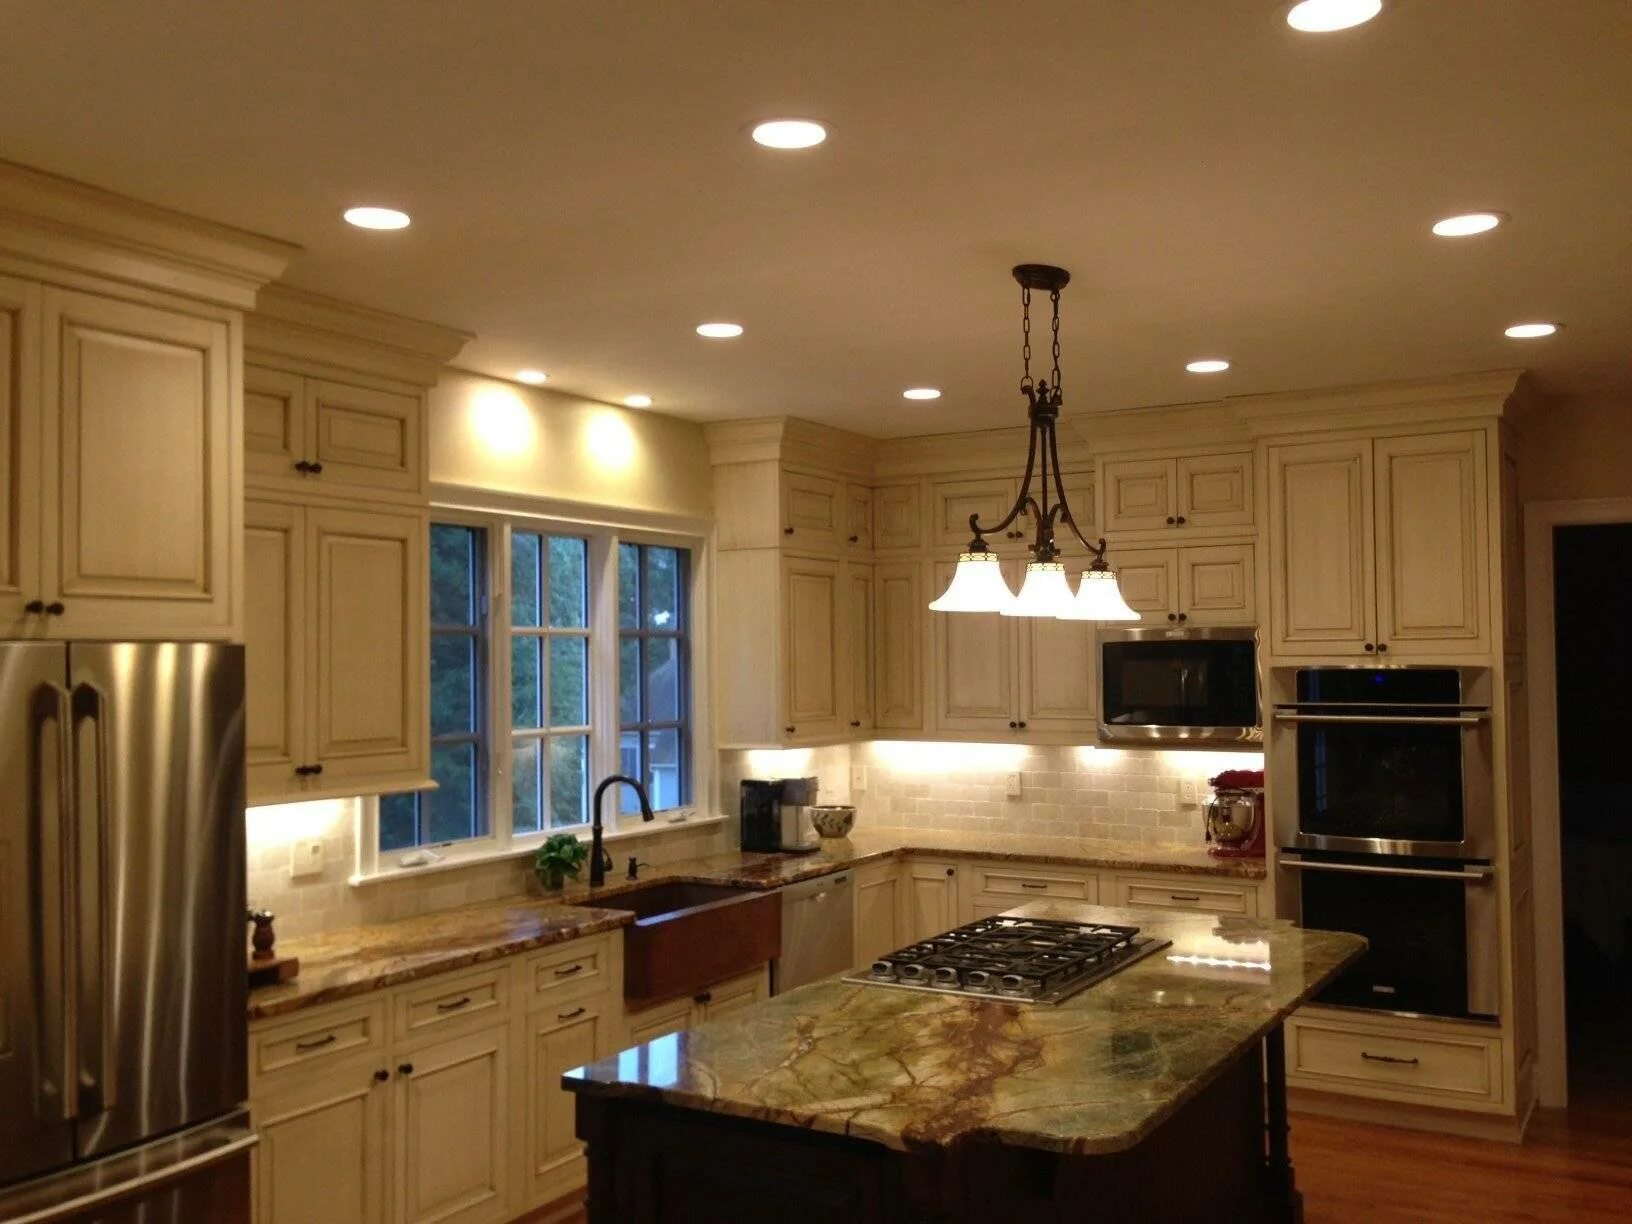 Good lighting. Освещение на кухне. Точечное освещение на кухне. Встроенные светильники на кухне. Потолочное освещение на кухне.